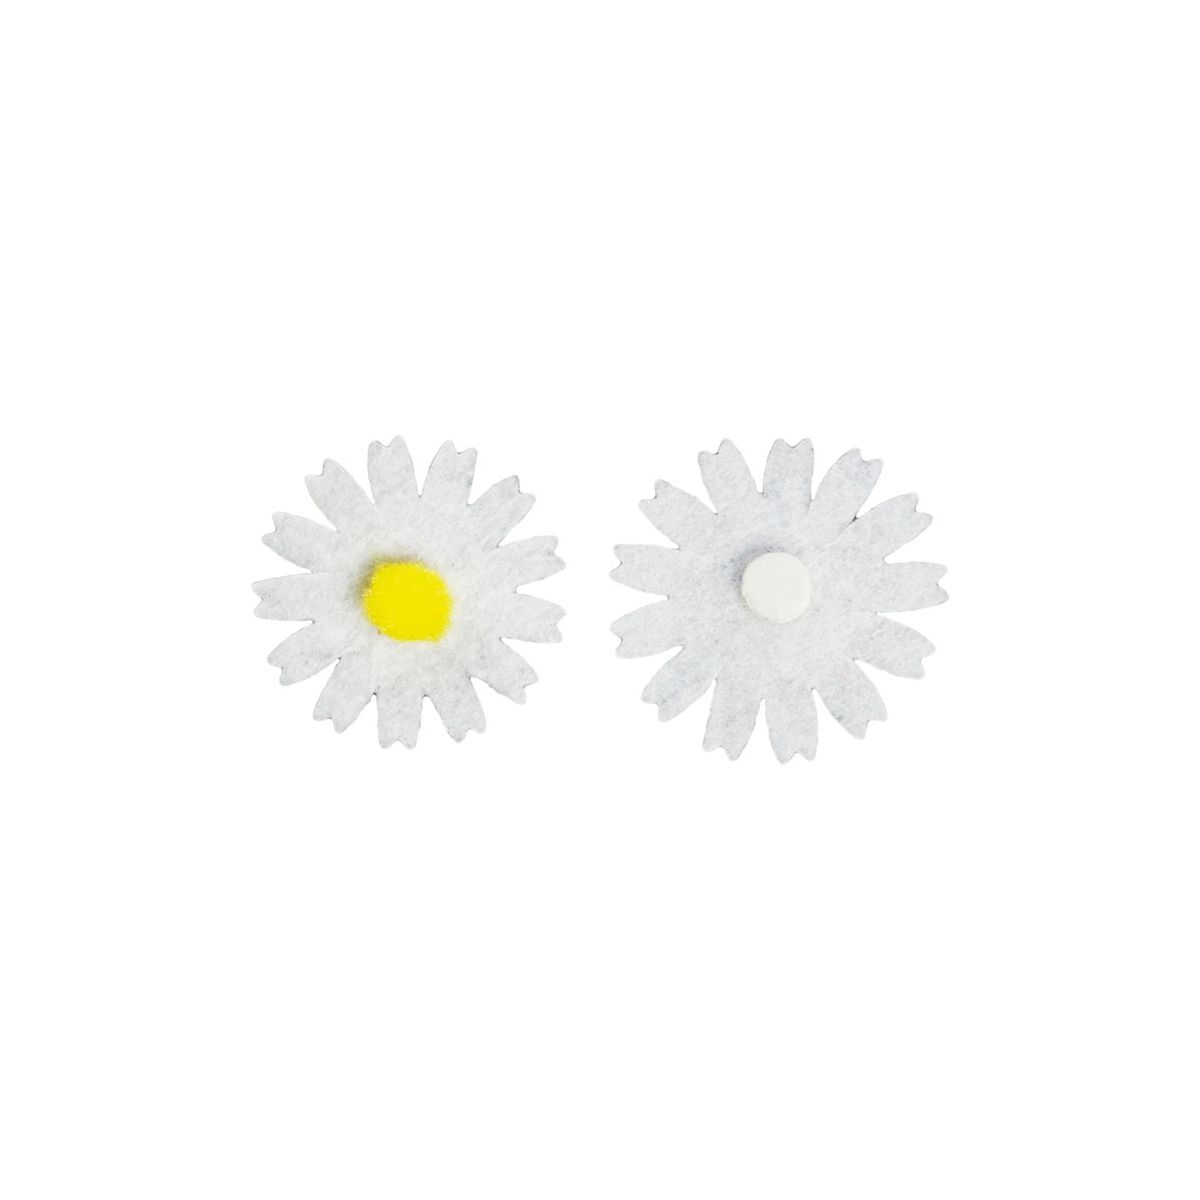 Ozdoba filcowa Titanum Craft-Fun Series kwiaty samoprzylepne (7534E)